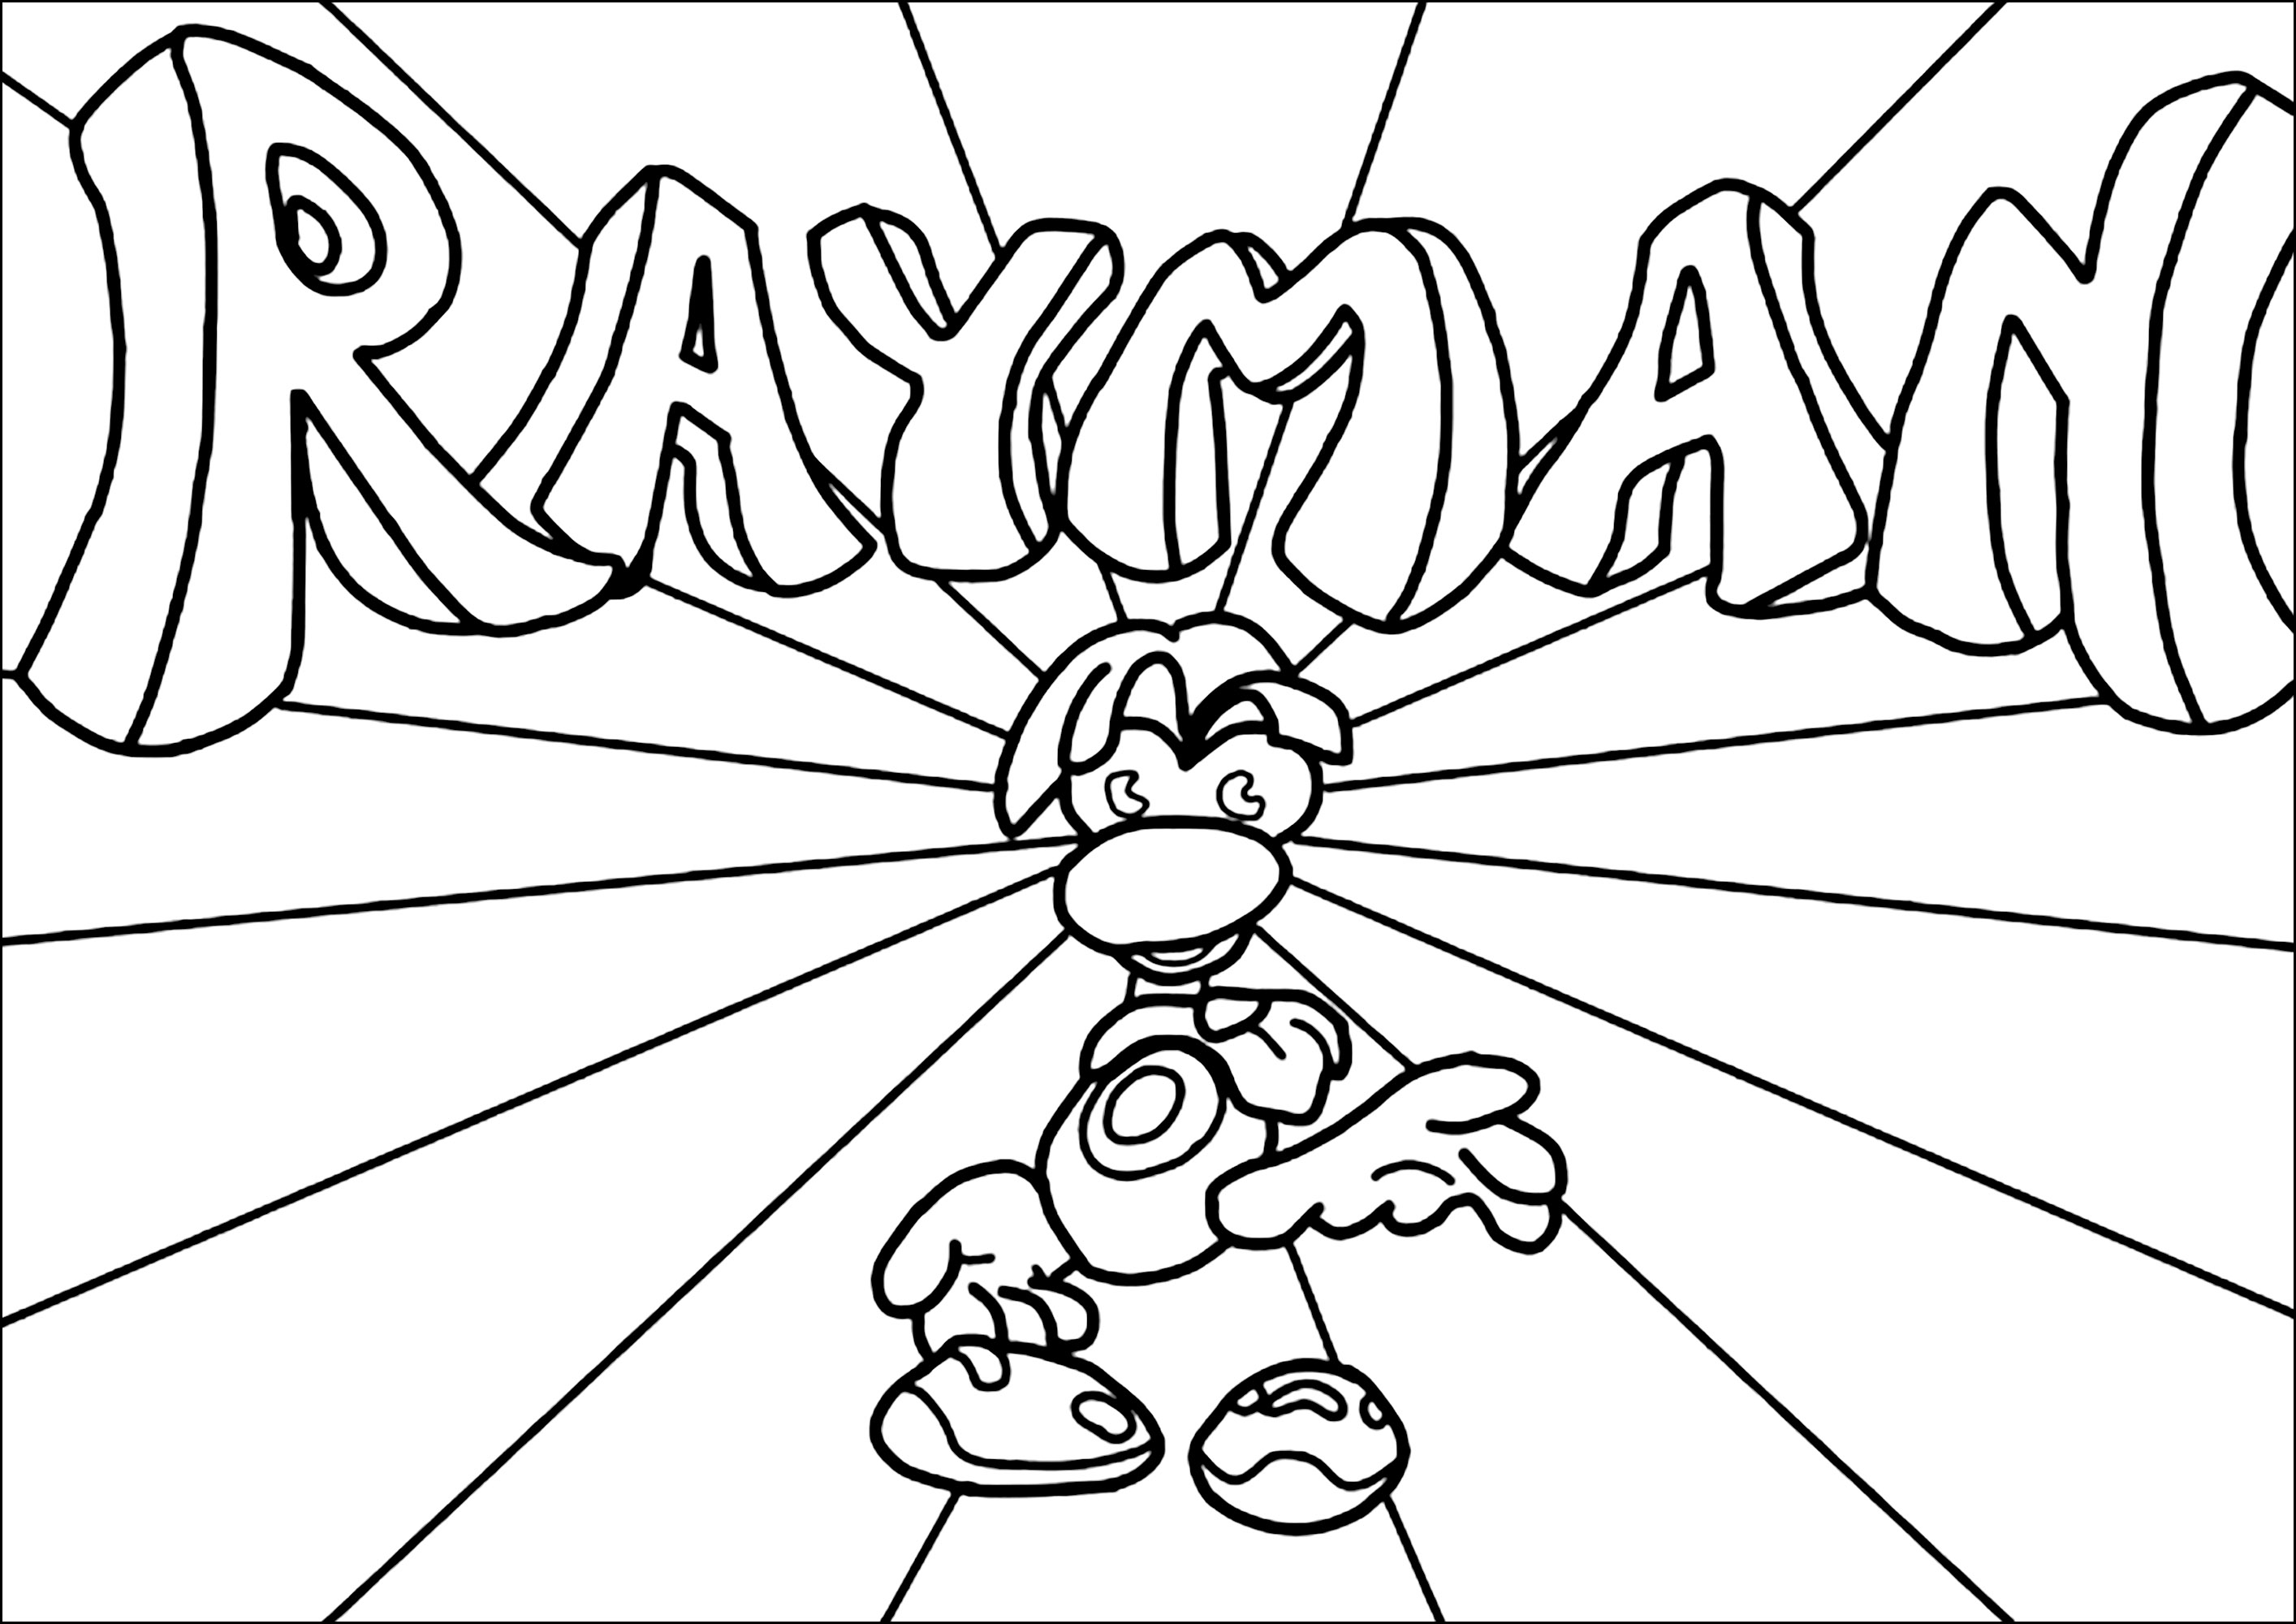 Personagem Rayman com logótipo em fundo